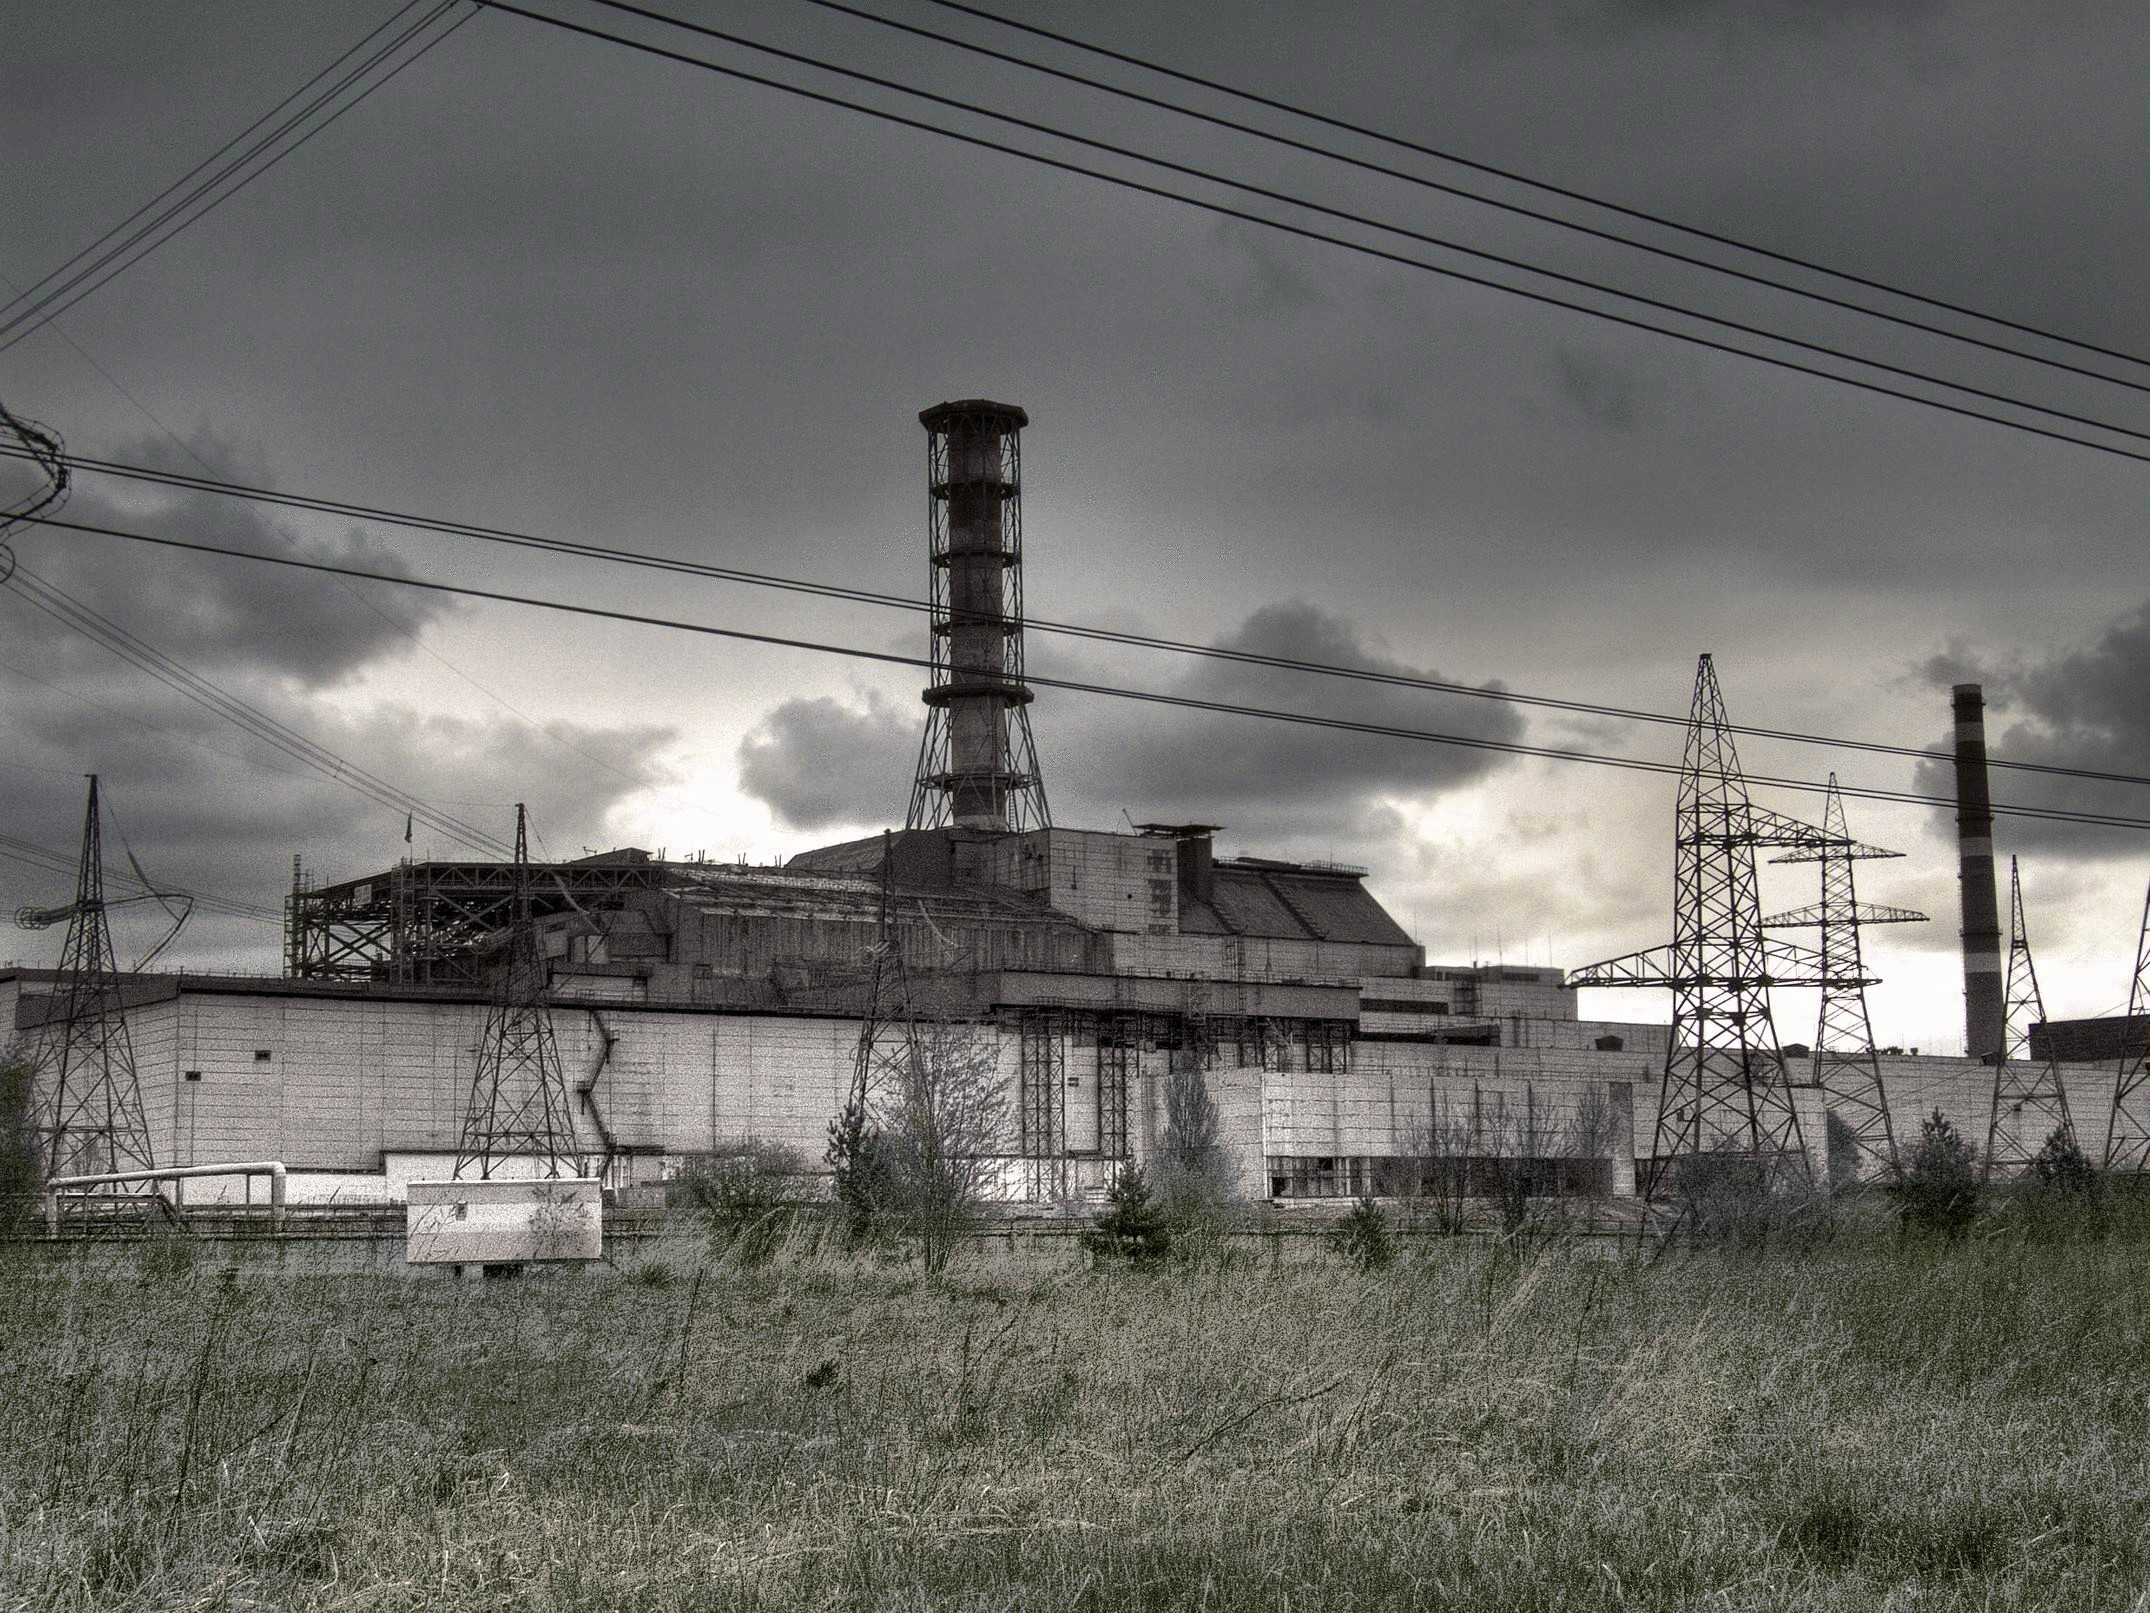 Http chernobyl. Чернобыль Припять АЭС. Сталкер 4 энергоблок. Припять атомная станция. Припять станция АЭС.